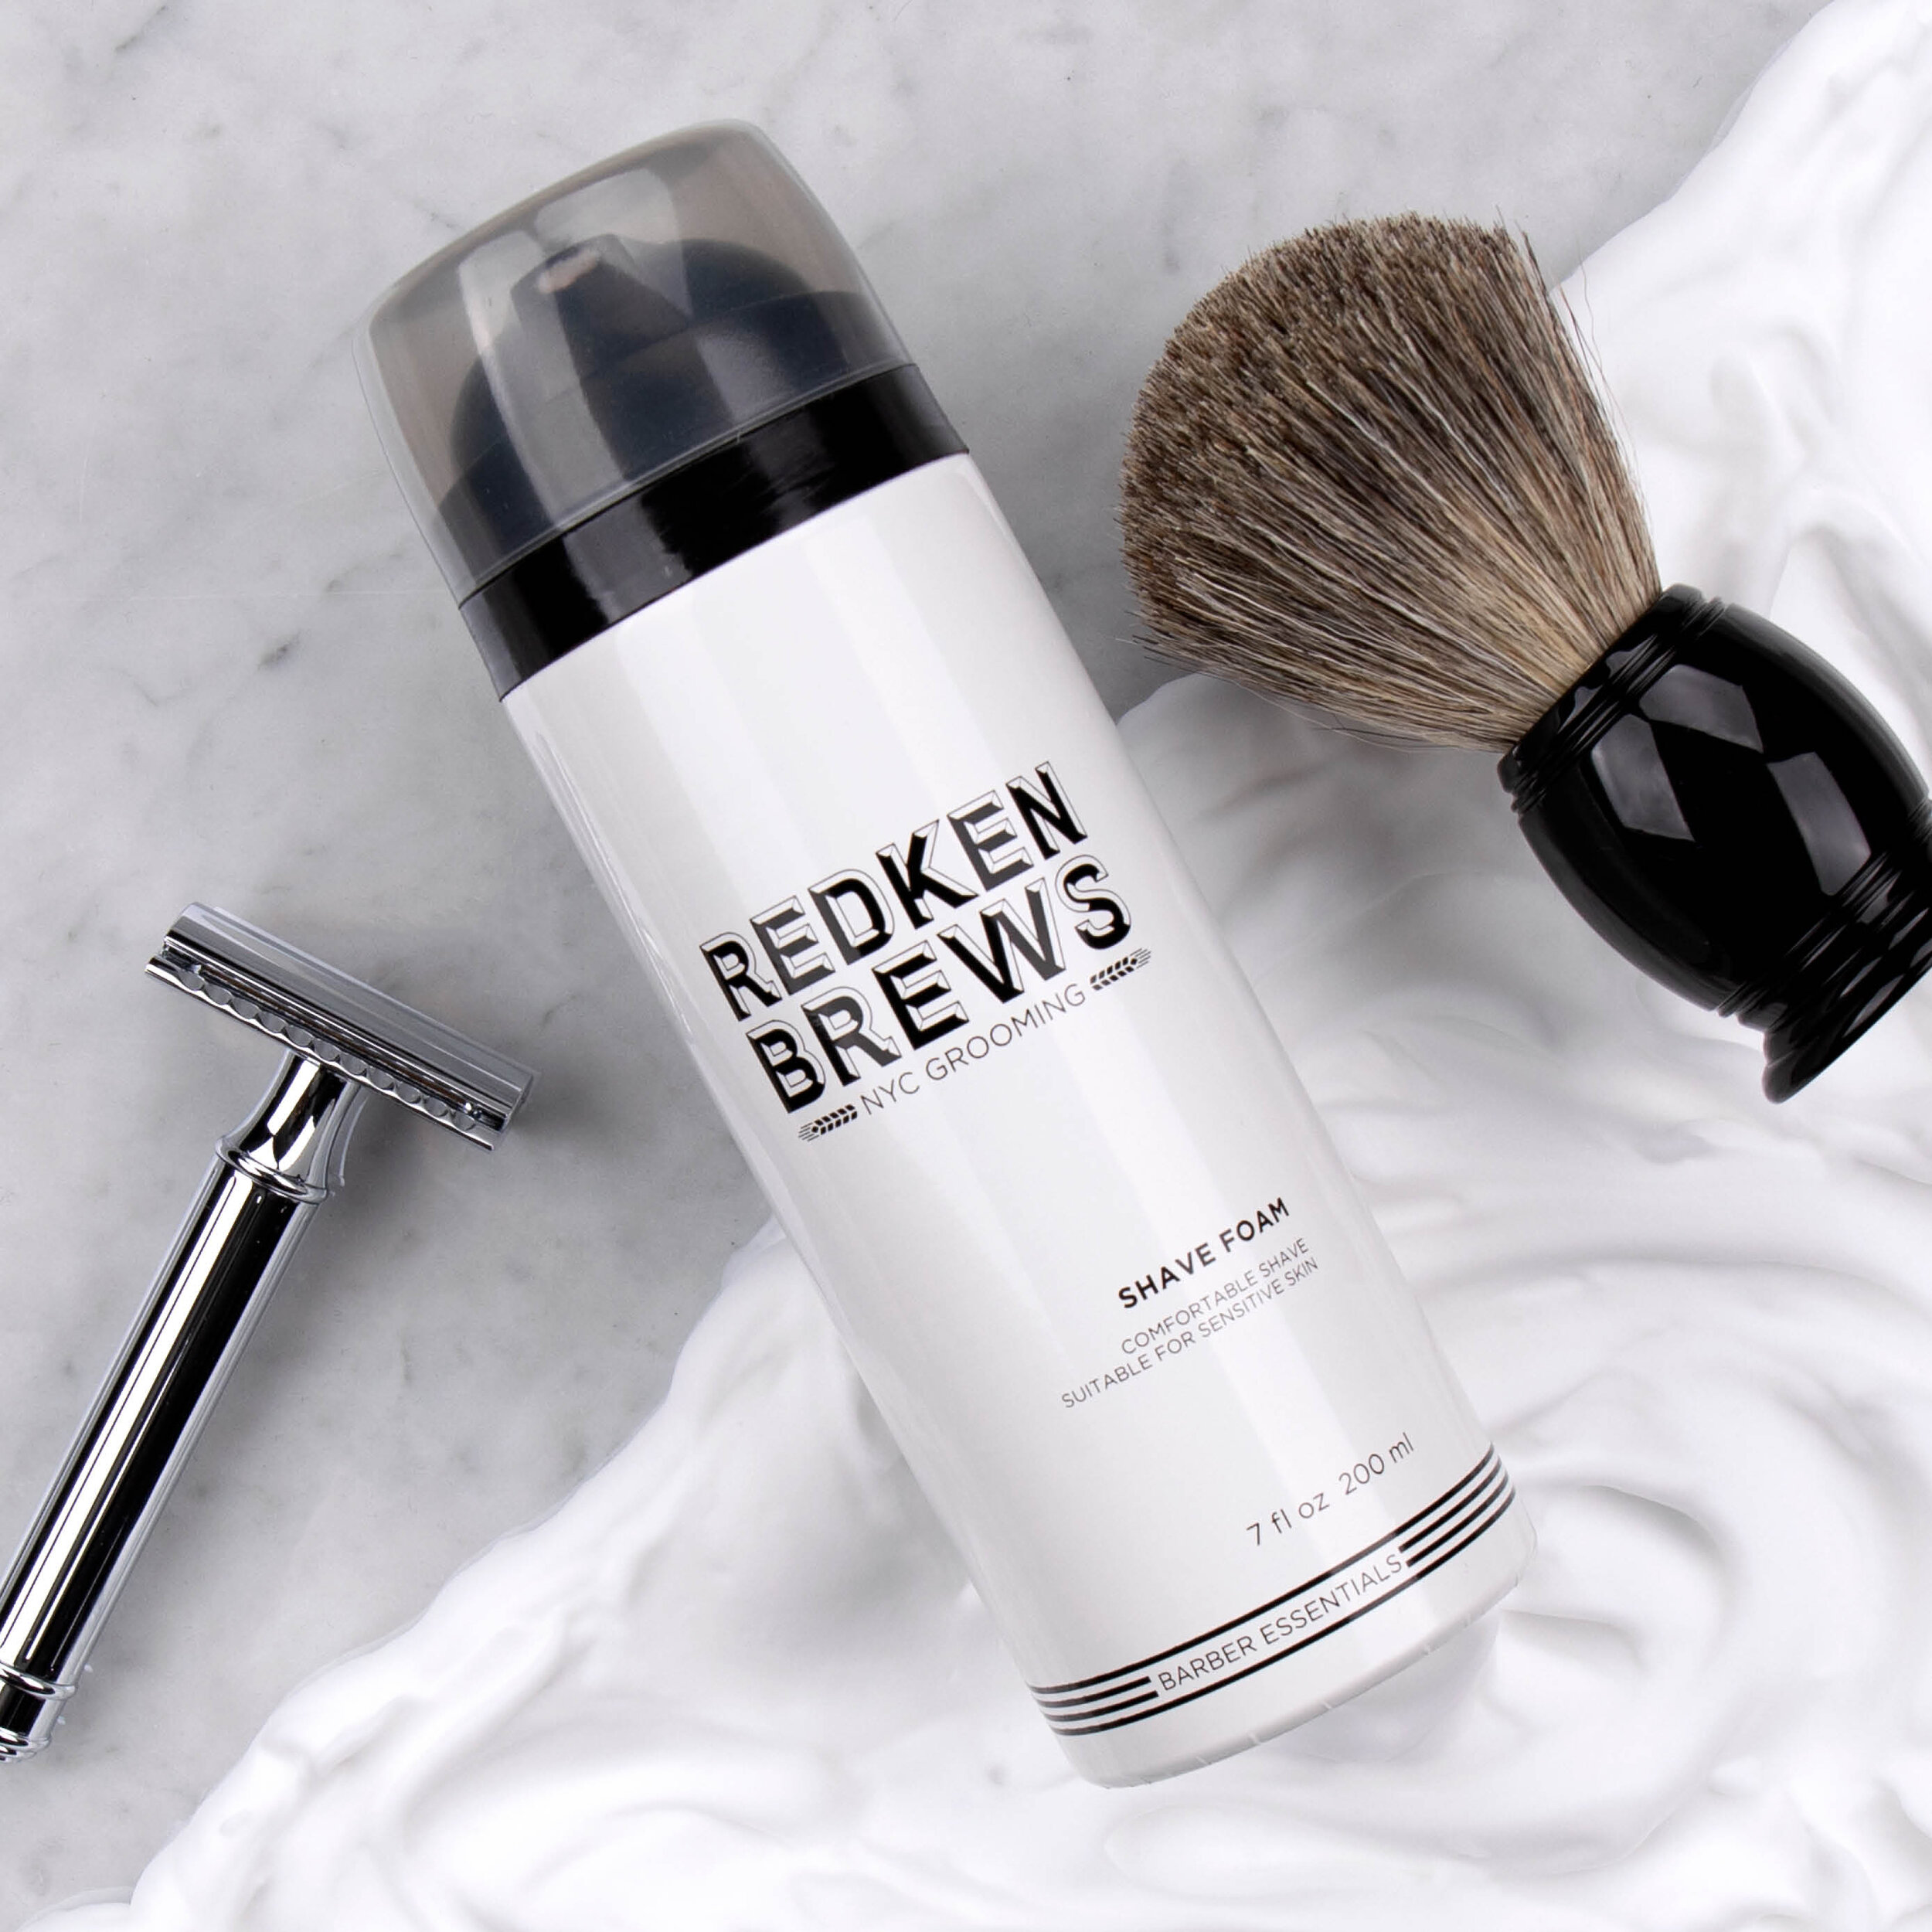 Redken-2019-Brews-Shave-Foam-Social-Post-11.jpg